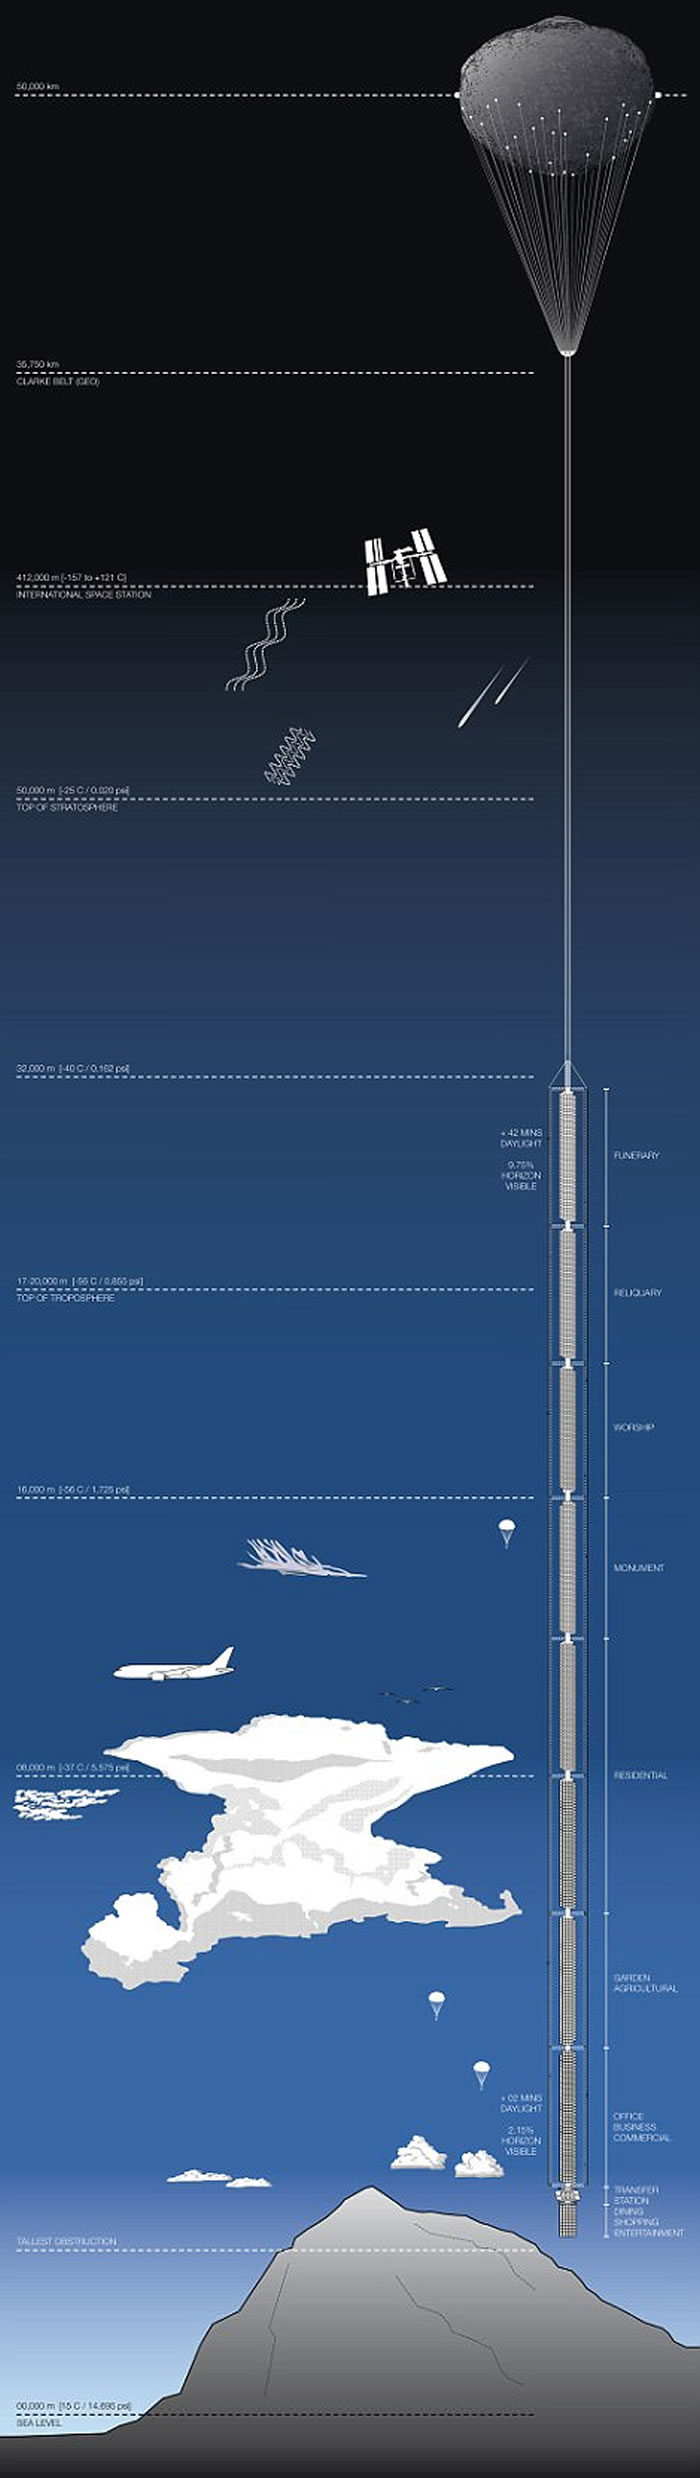 美国纽约云端建筑工作室推超高层大楼Analemma Tower 将从外太空往地球表面兴建